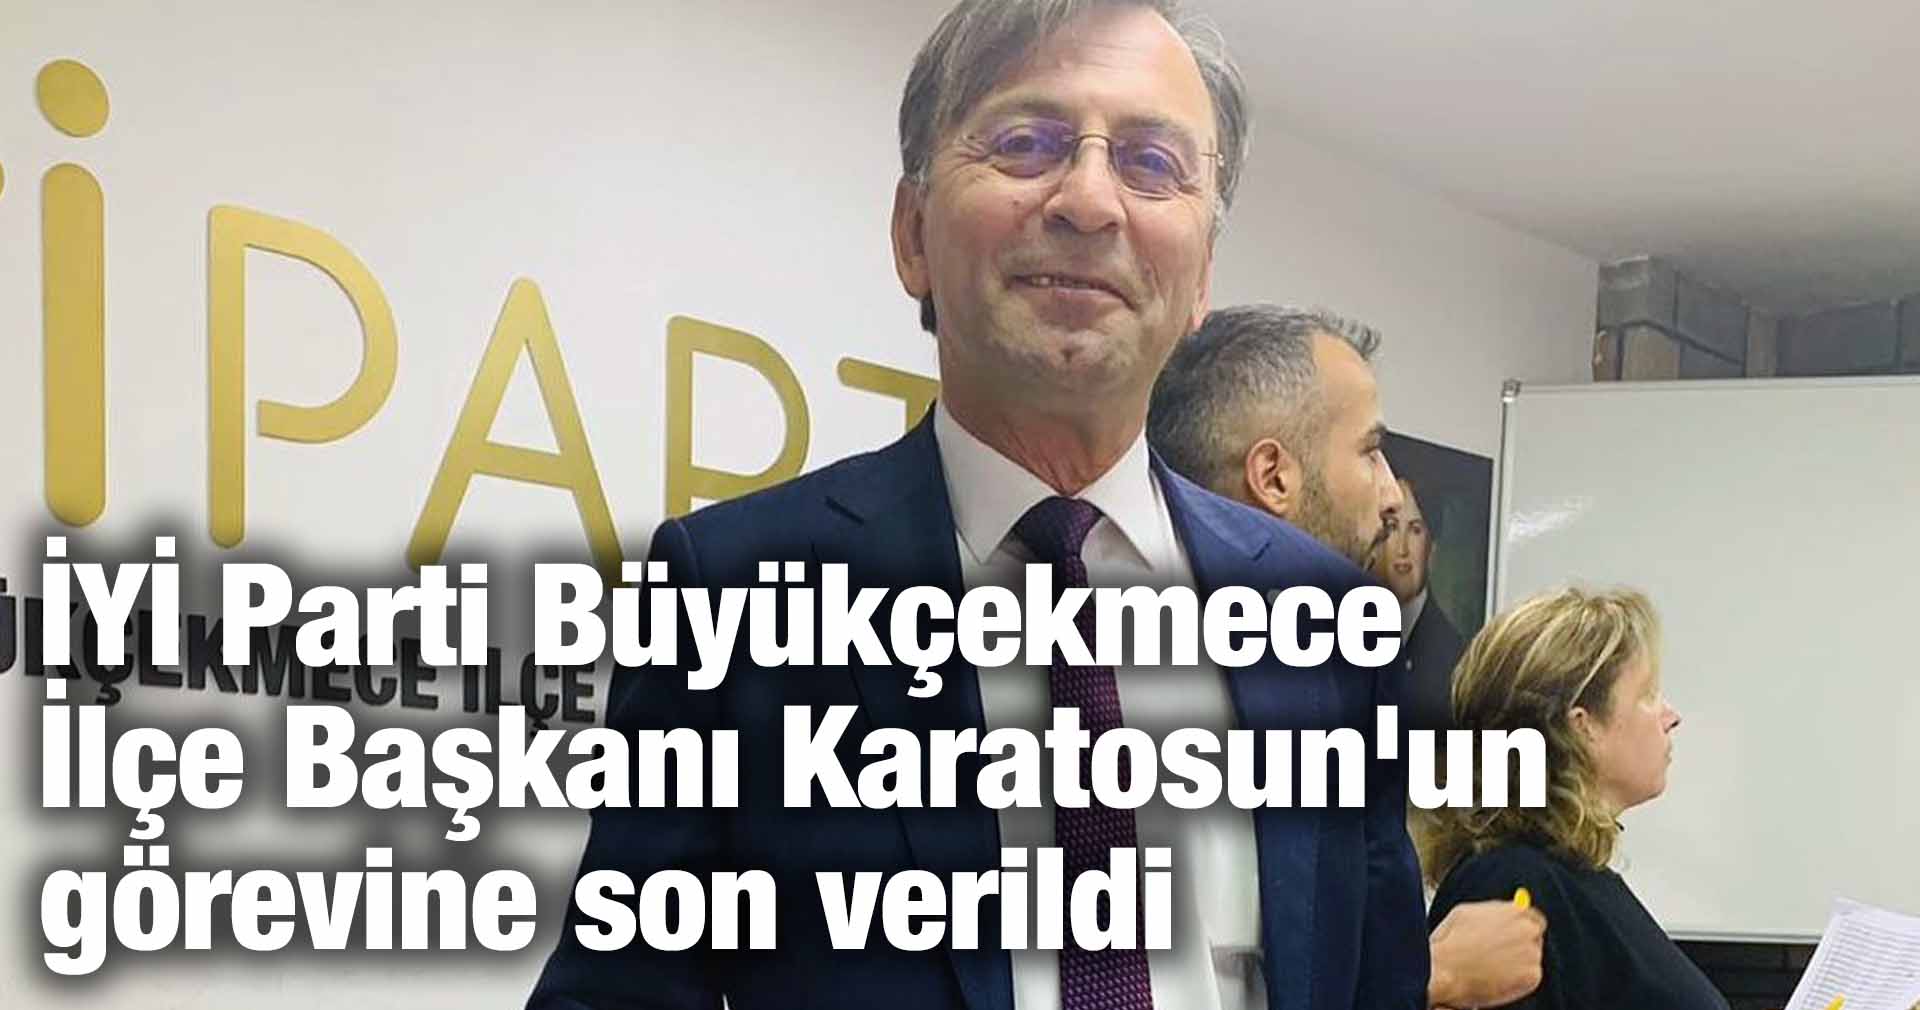 İYİ Parti Büyükçekmece İlçe Başkanı Burhan Karatosun’un görevine son verildi